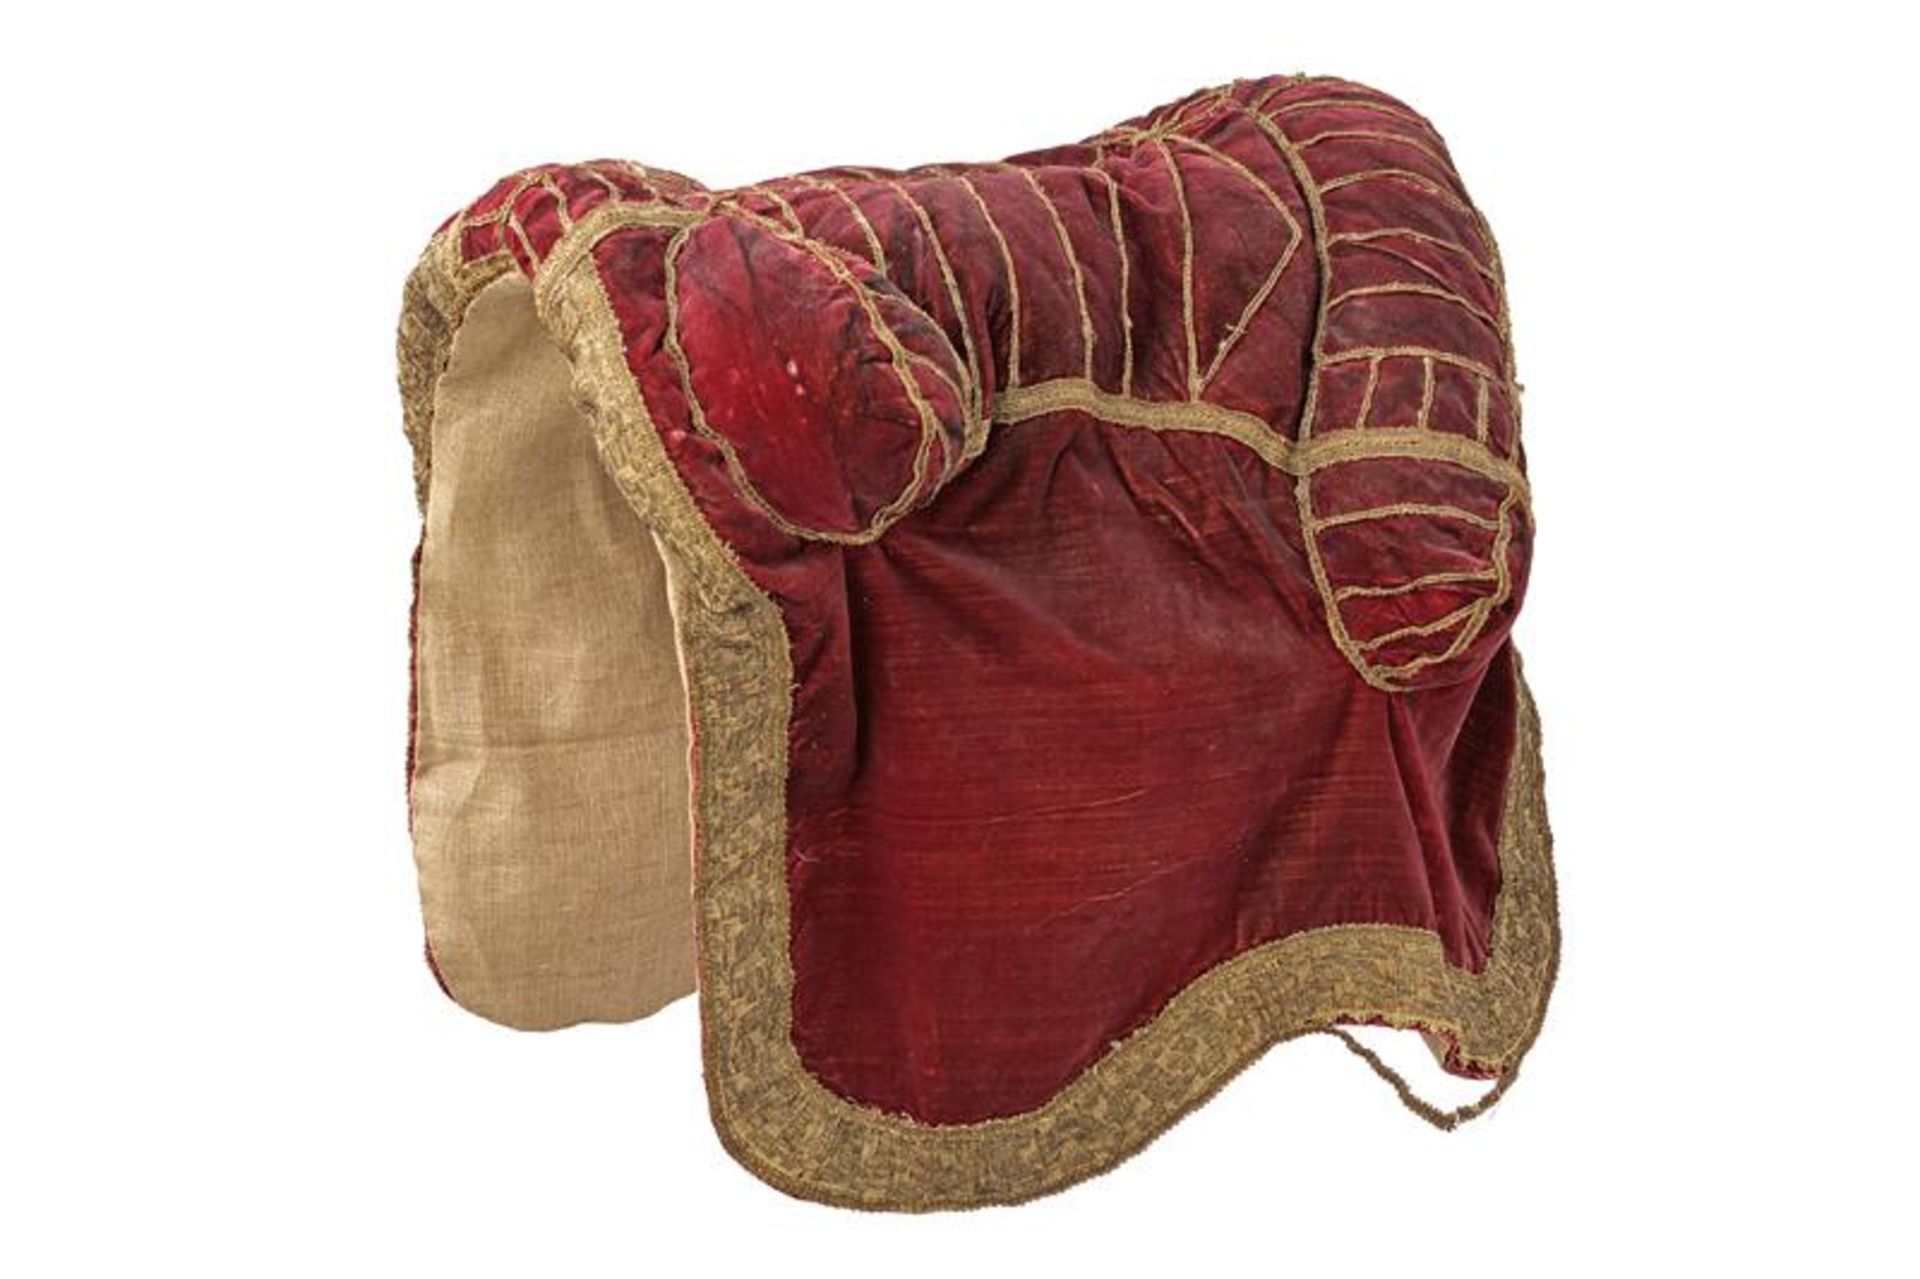 A saddle cover